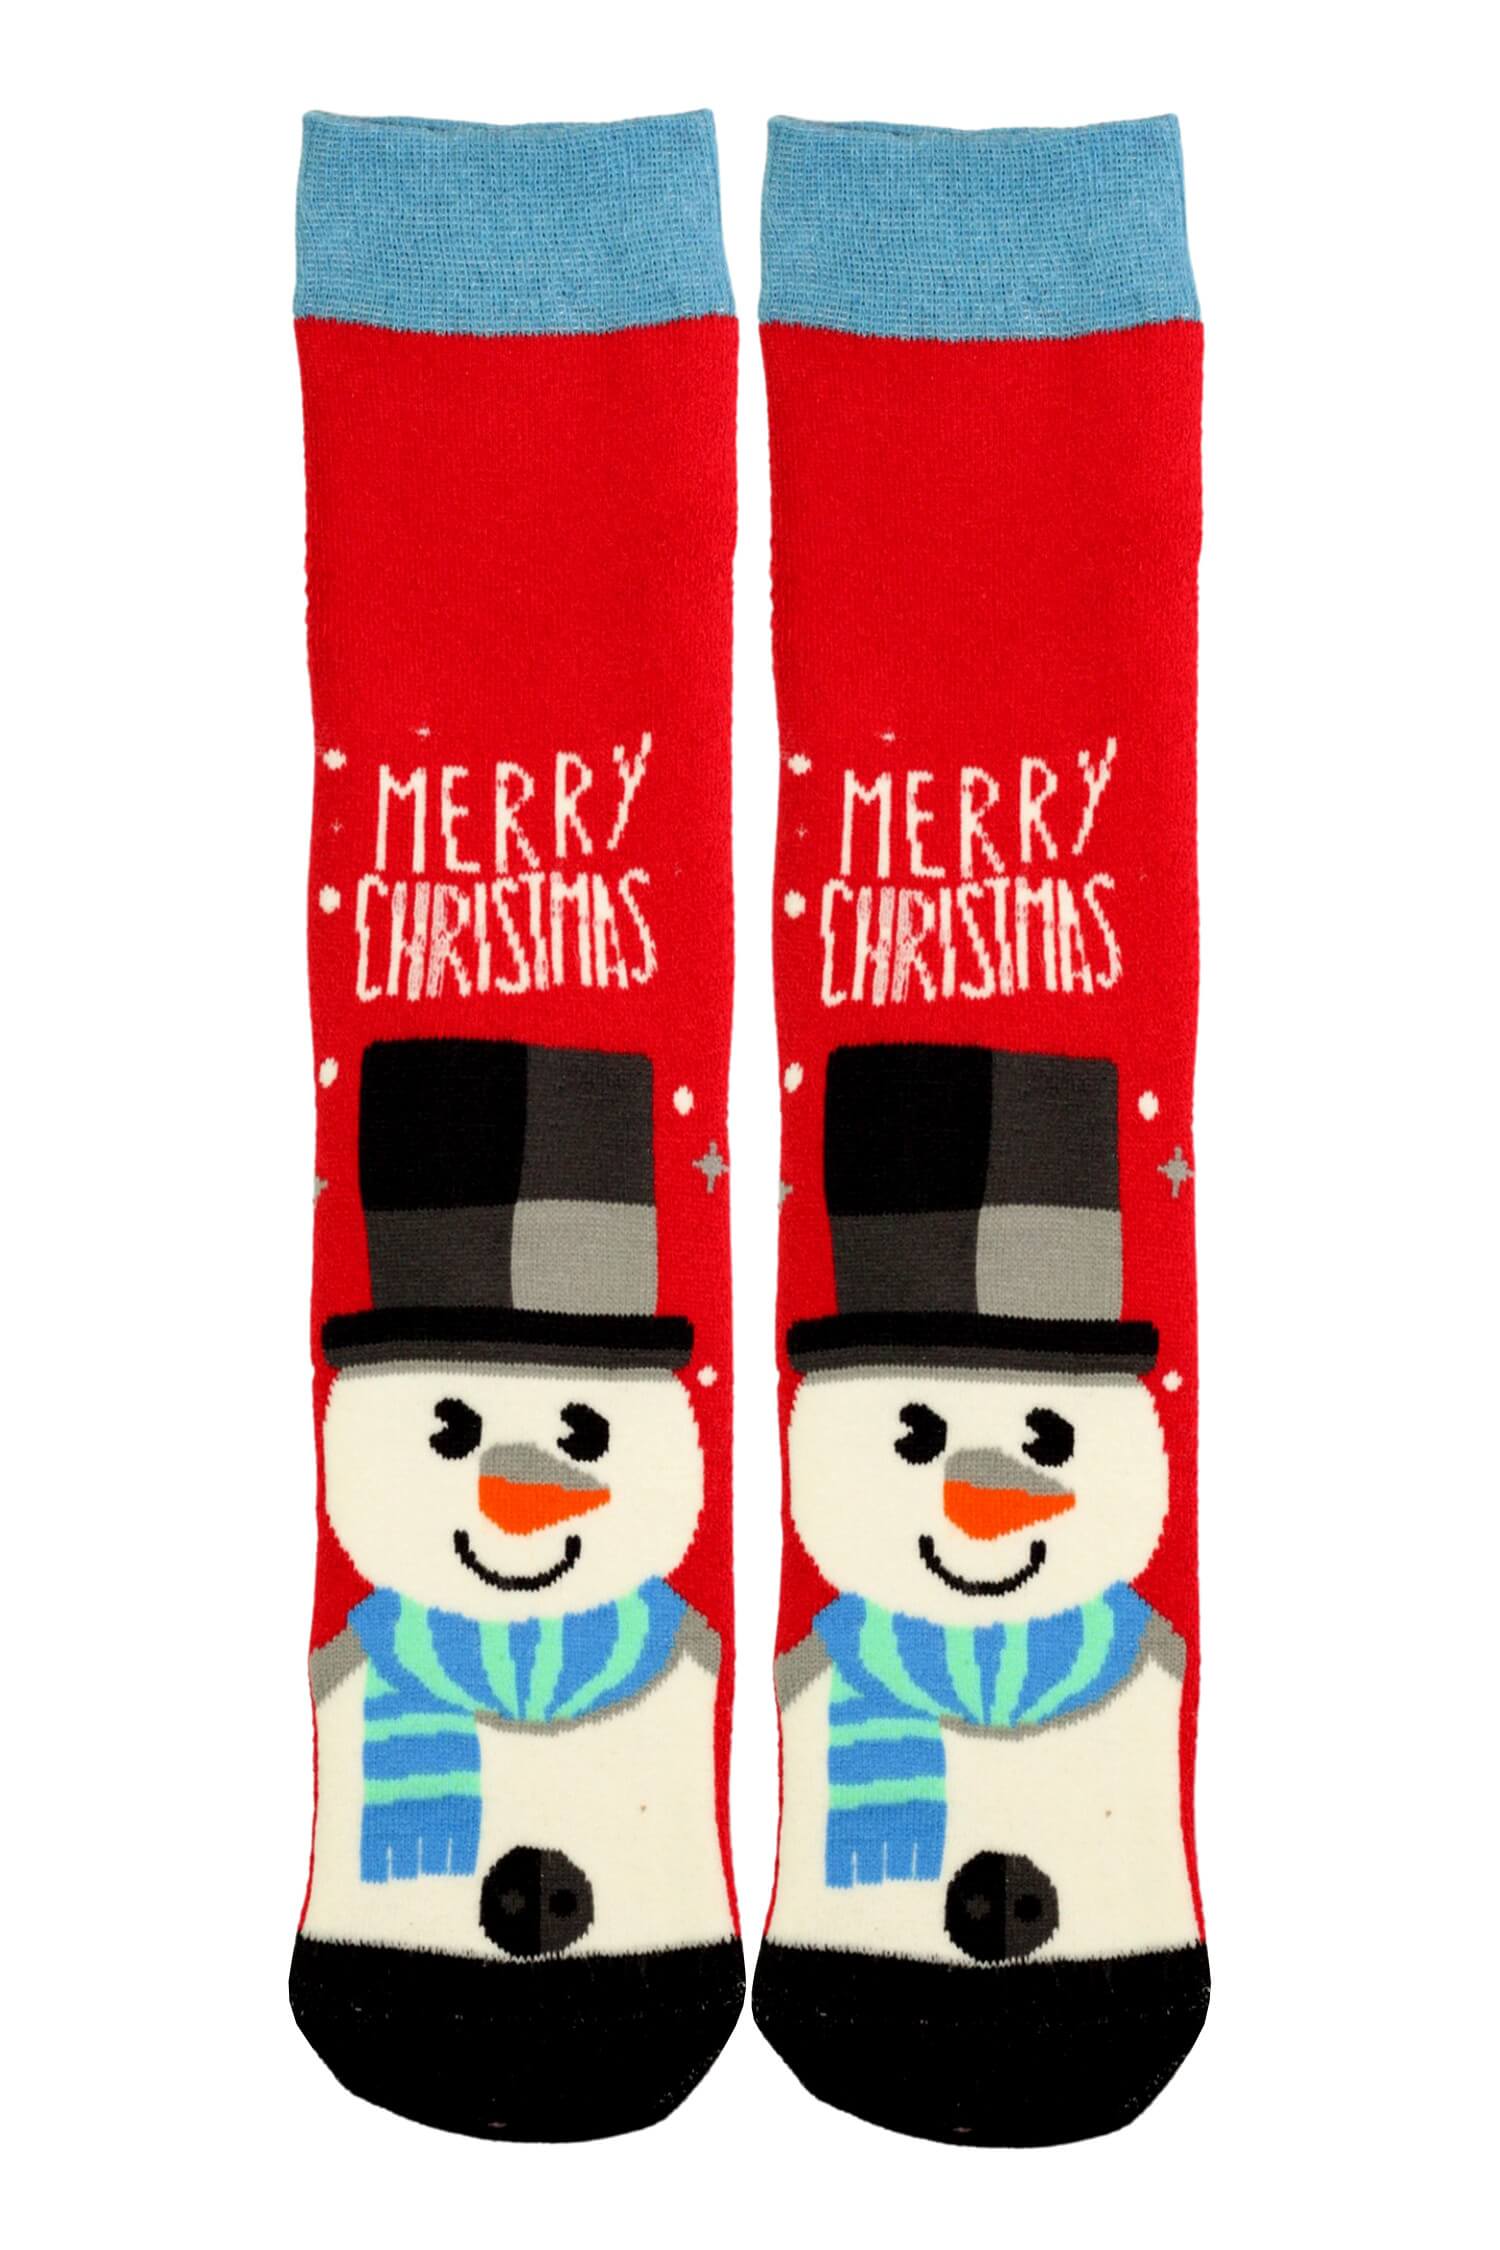 Virgina vánoční termo ponožky dámské sněhulák 35-38 červená